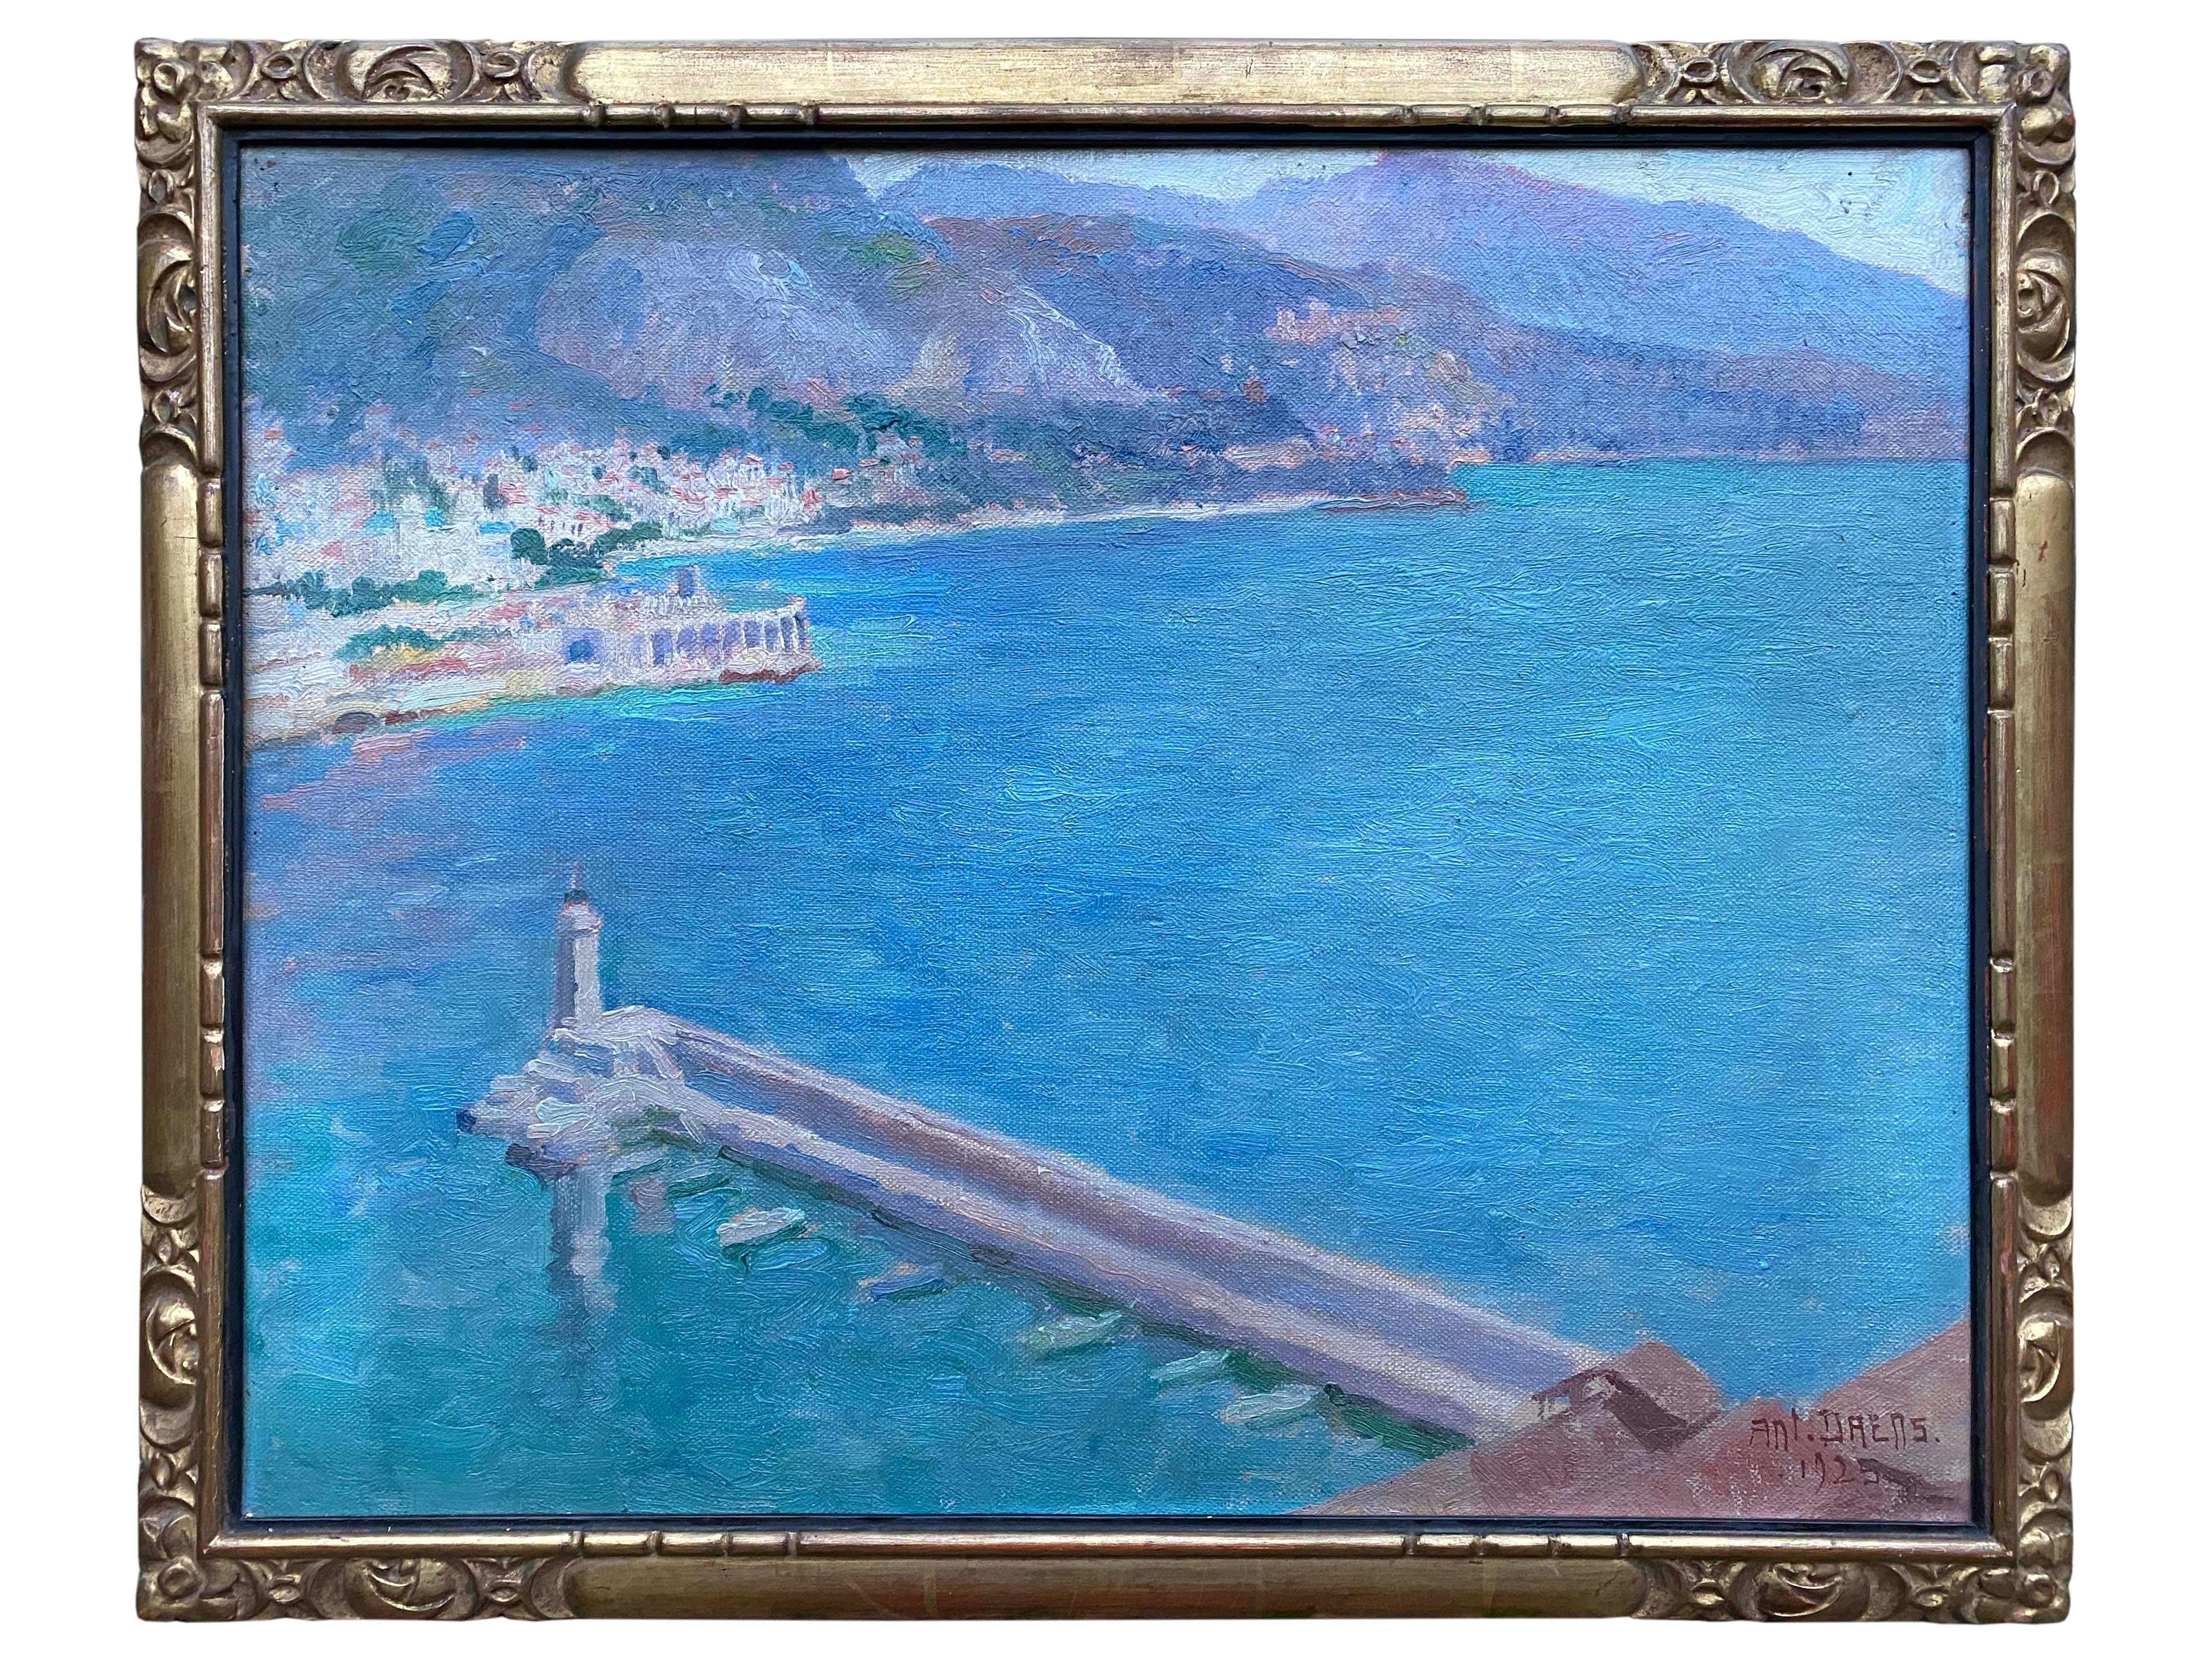 Seelandschaft mit Pier und Leuchtturm des Hafens von Monaco

Daens Antoine
Brüssel 1871 - 1946
Belgischer Maler
Unterschrift: Unterzeichnet unten rechts

Medium: Öl auf Leinwand
Abmessungen: Bildgröße 37 x 46 cm, Rahmengröße 42 x 51 cm

Biografie: